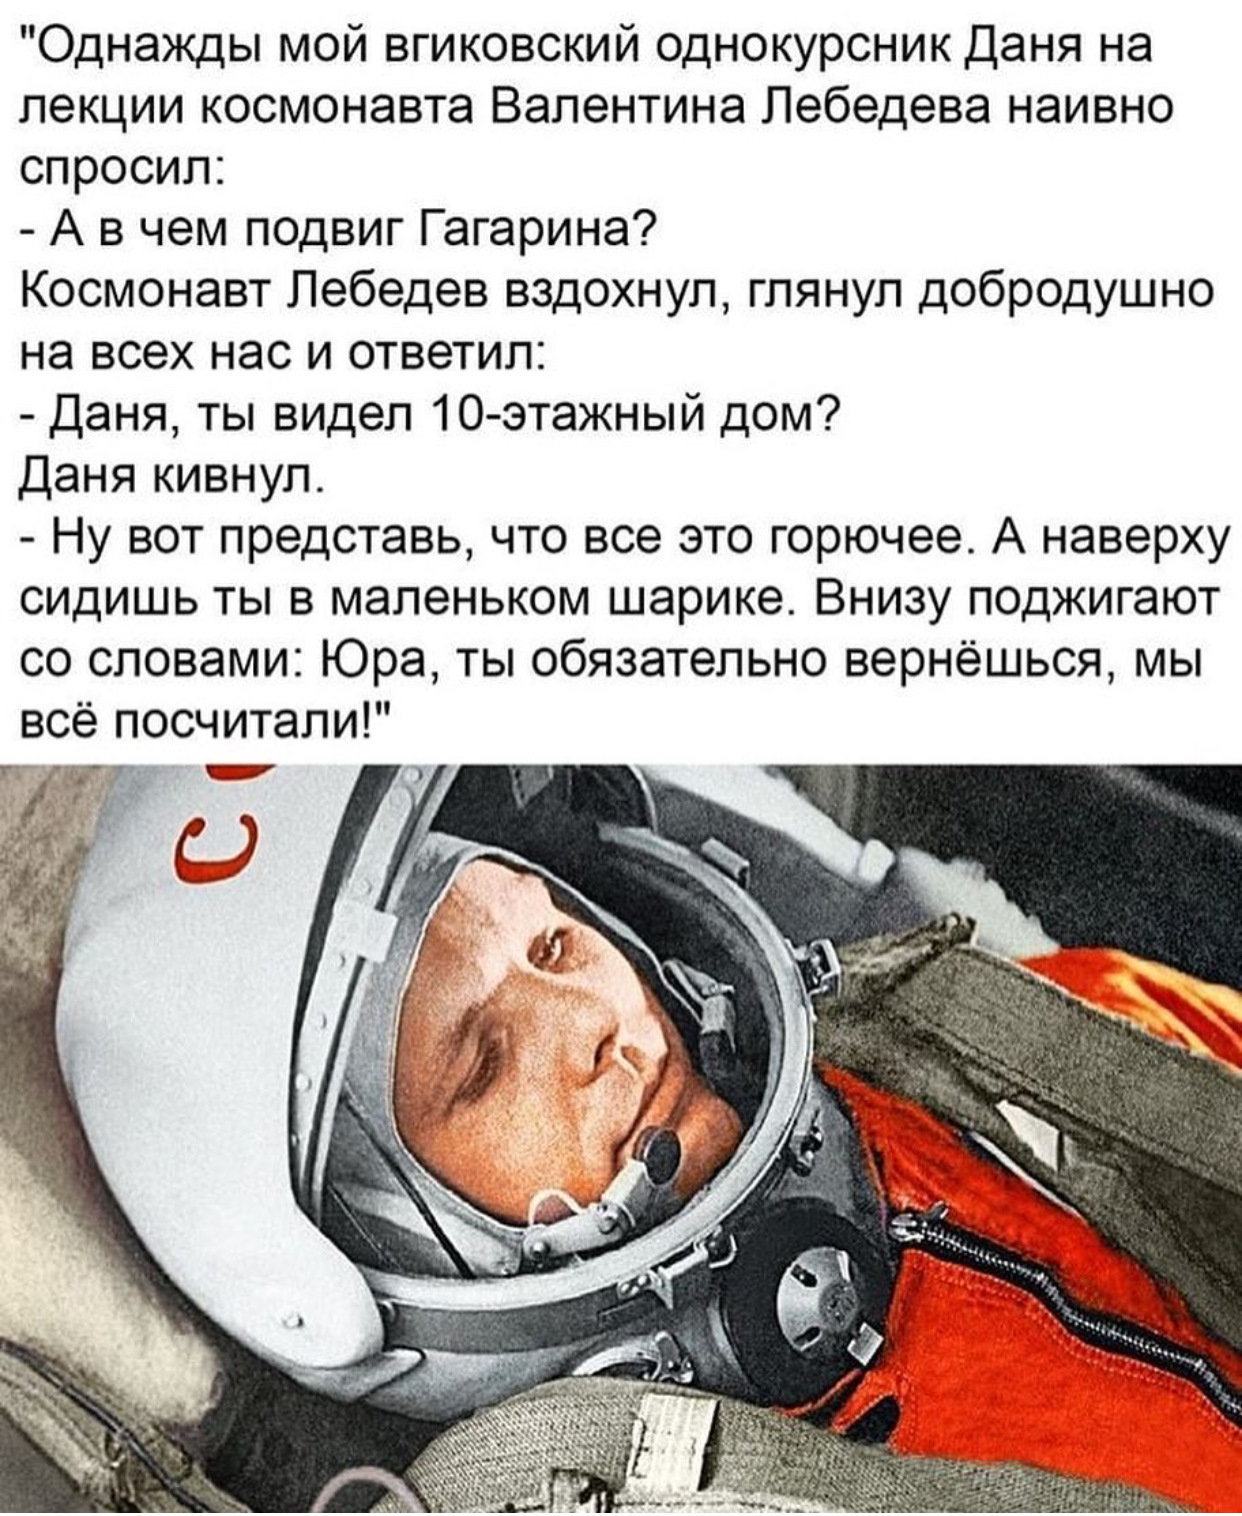 Какой предмет потерял гагарин. Подвиг Гагарина. Подвиг Юрия Гагарина. В чем героизм Гагарина. Гагарин космонавт.